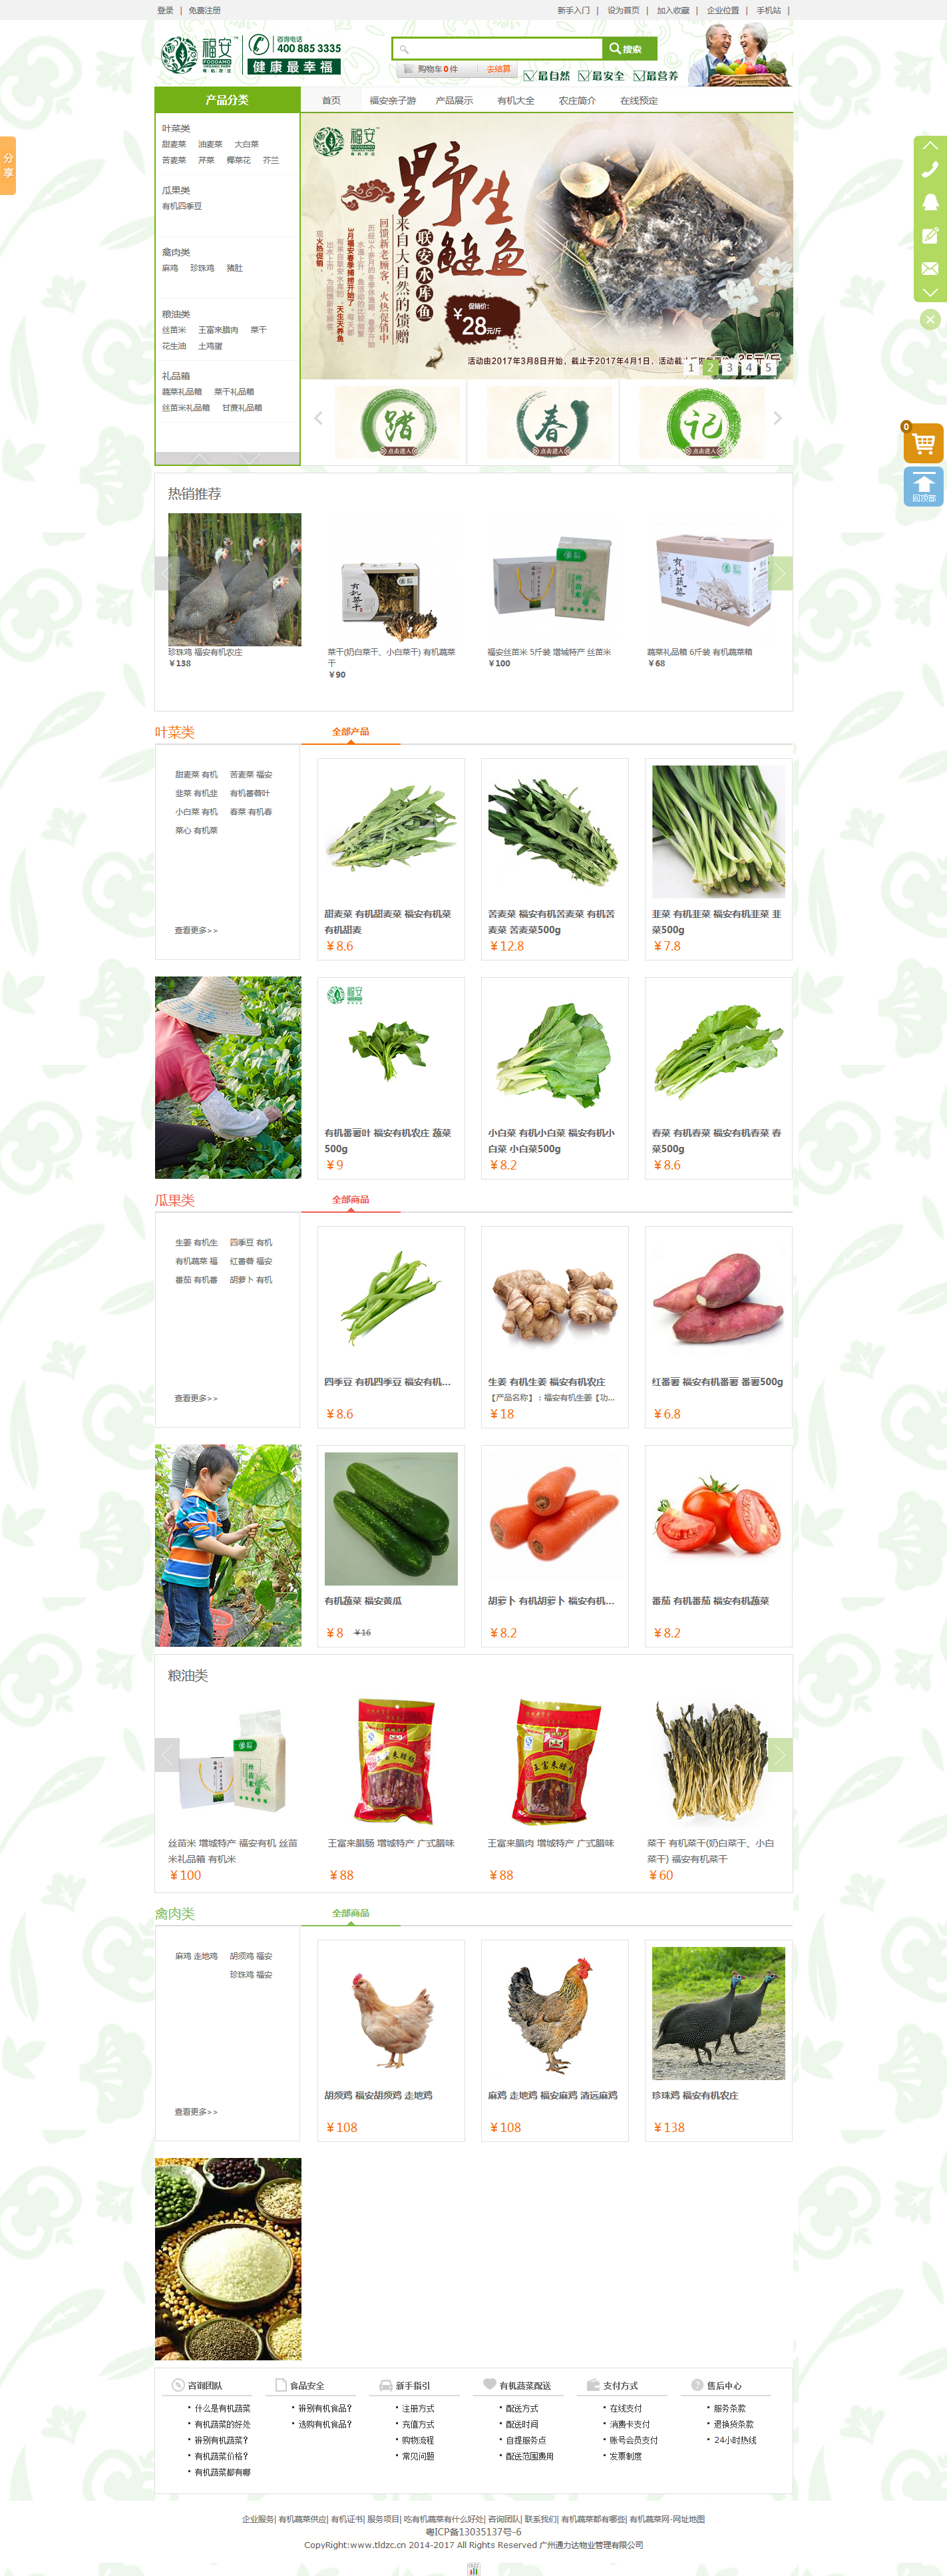 有机菜中国有机蔬菜网-中国有机蔬菜,蔬菜速递网站.png